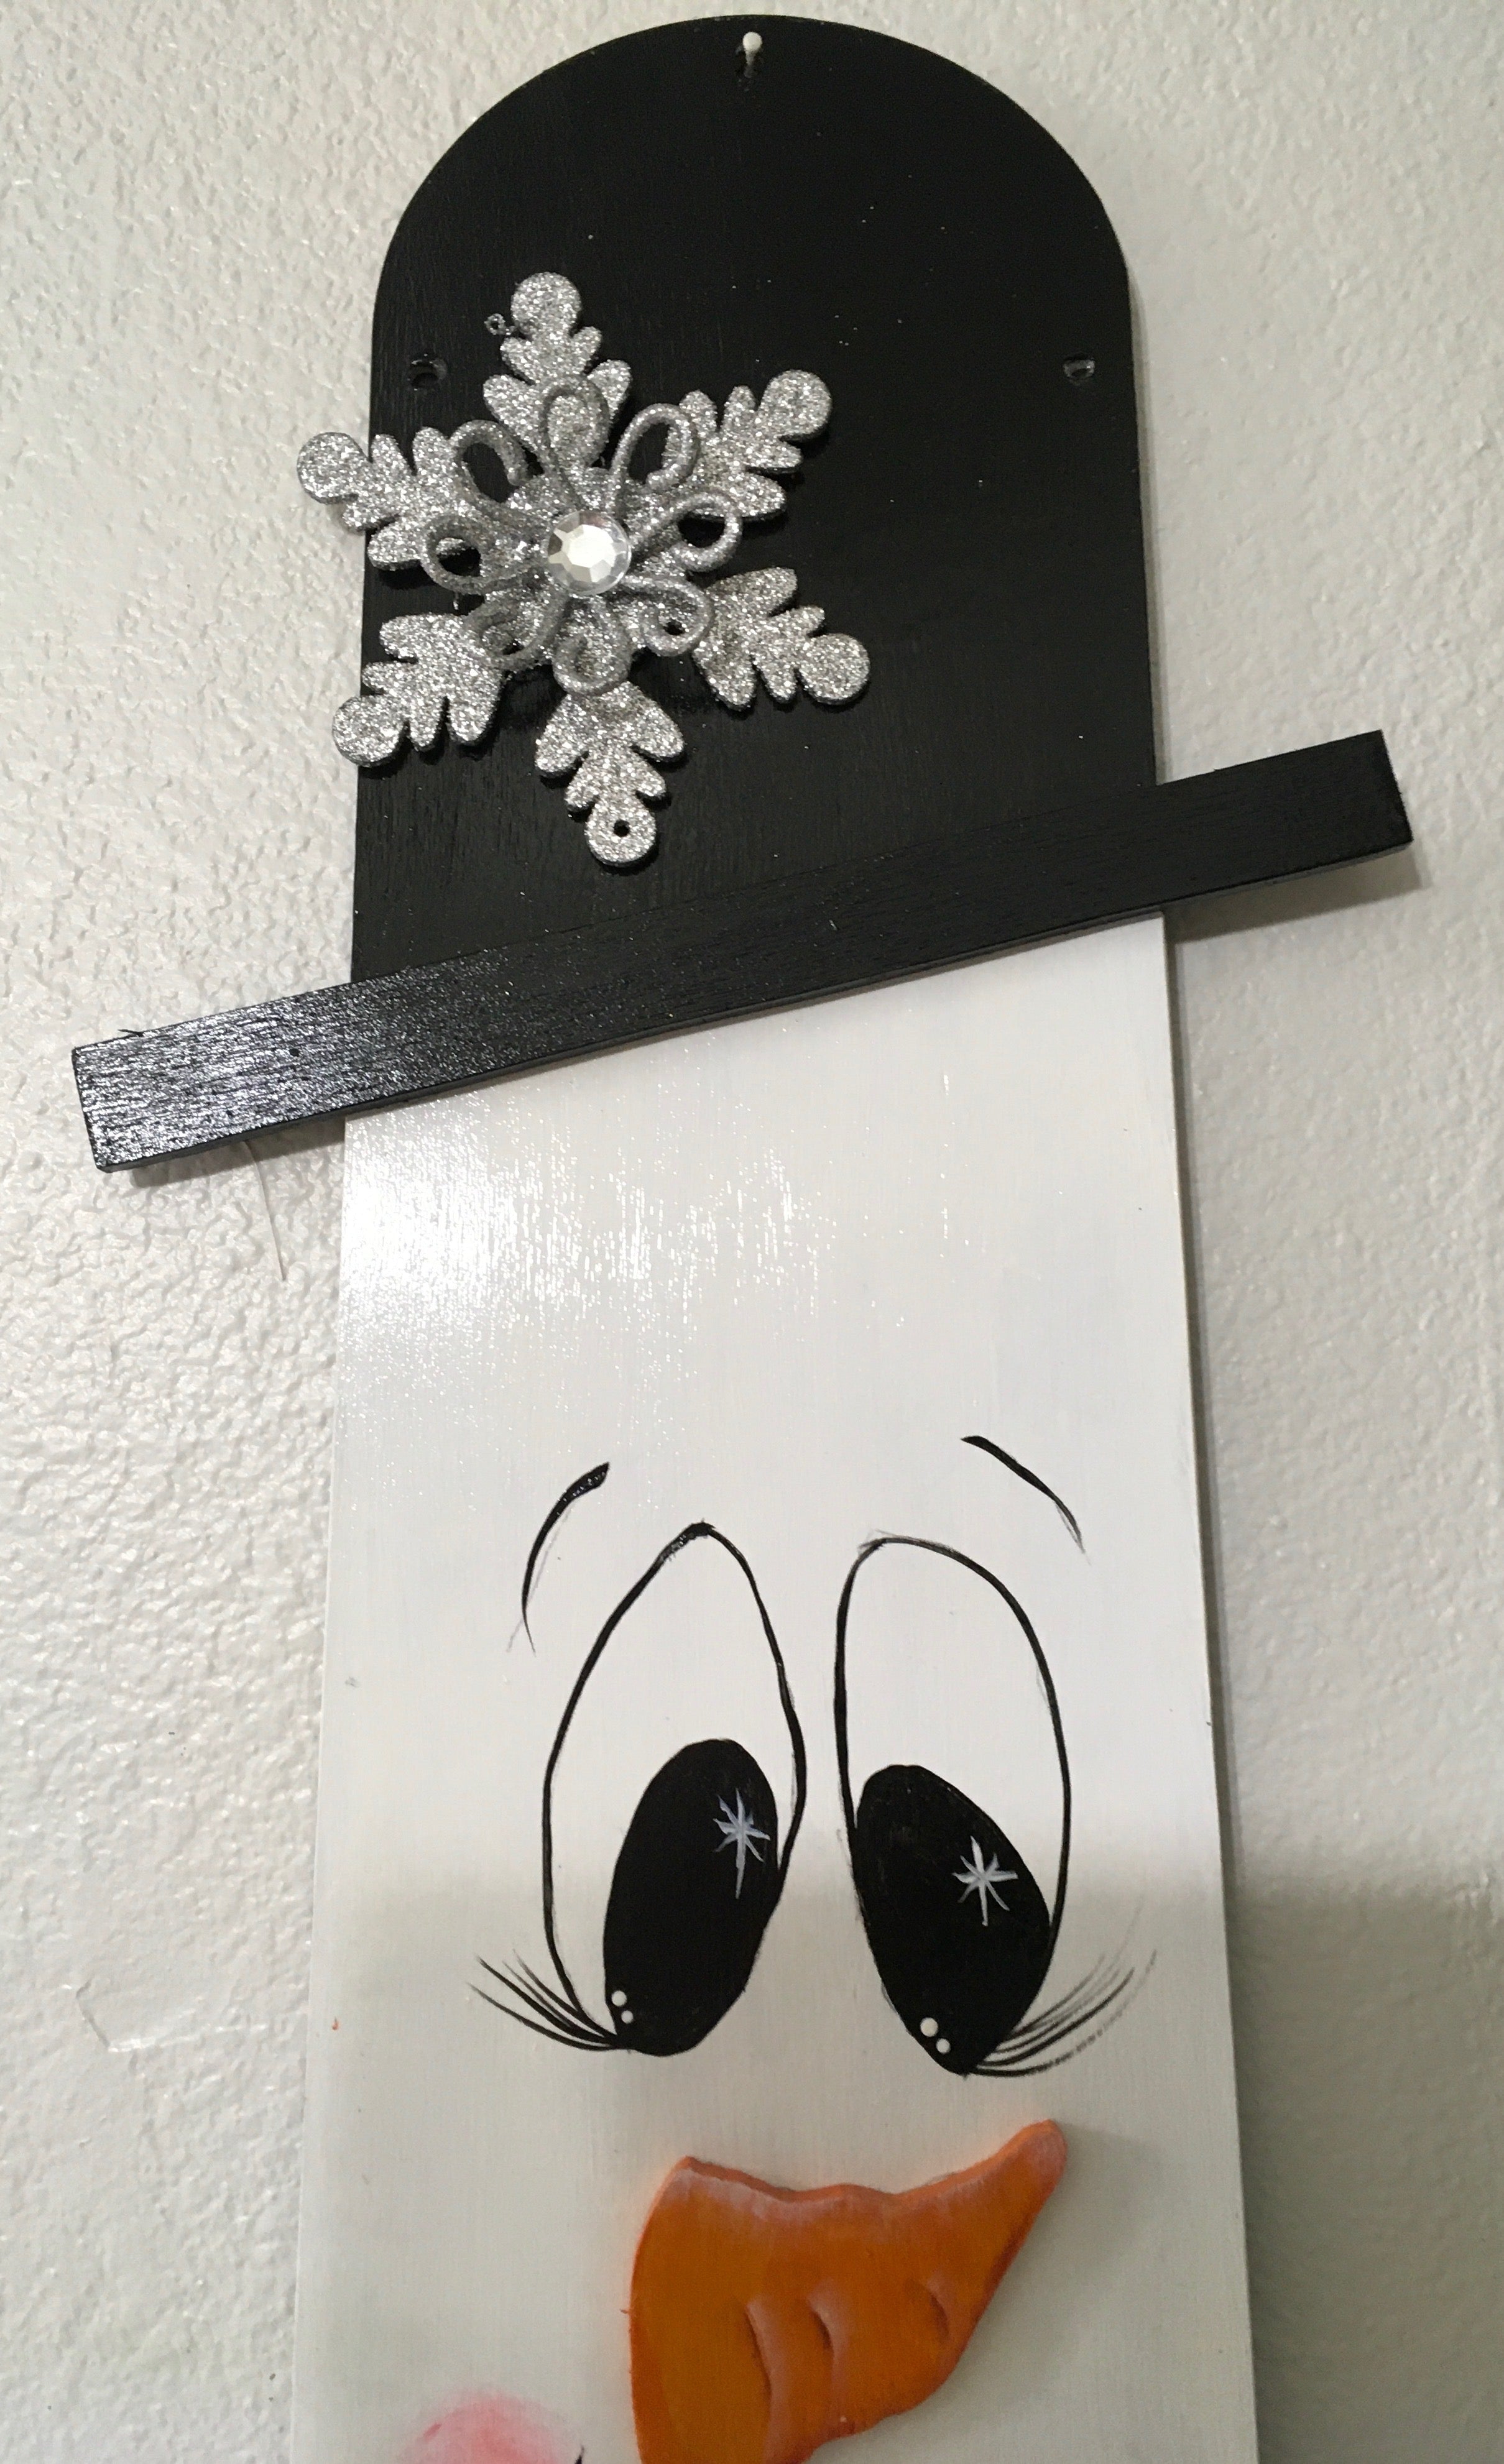 Fan Blade Wall Art Chalkboard Snowman 2